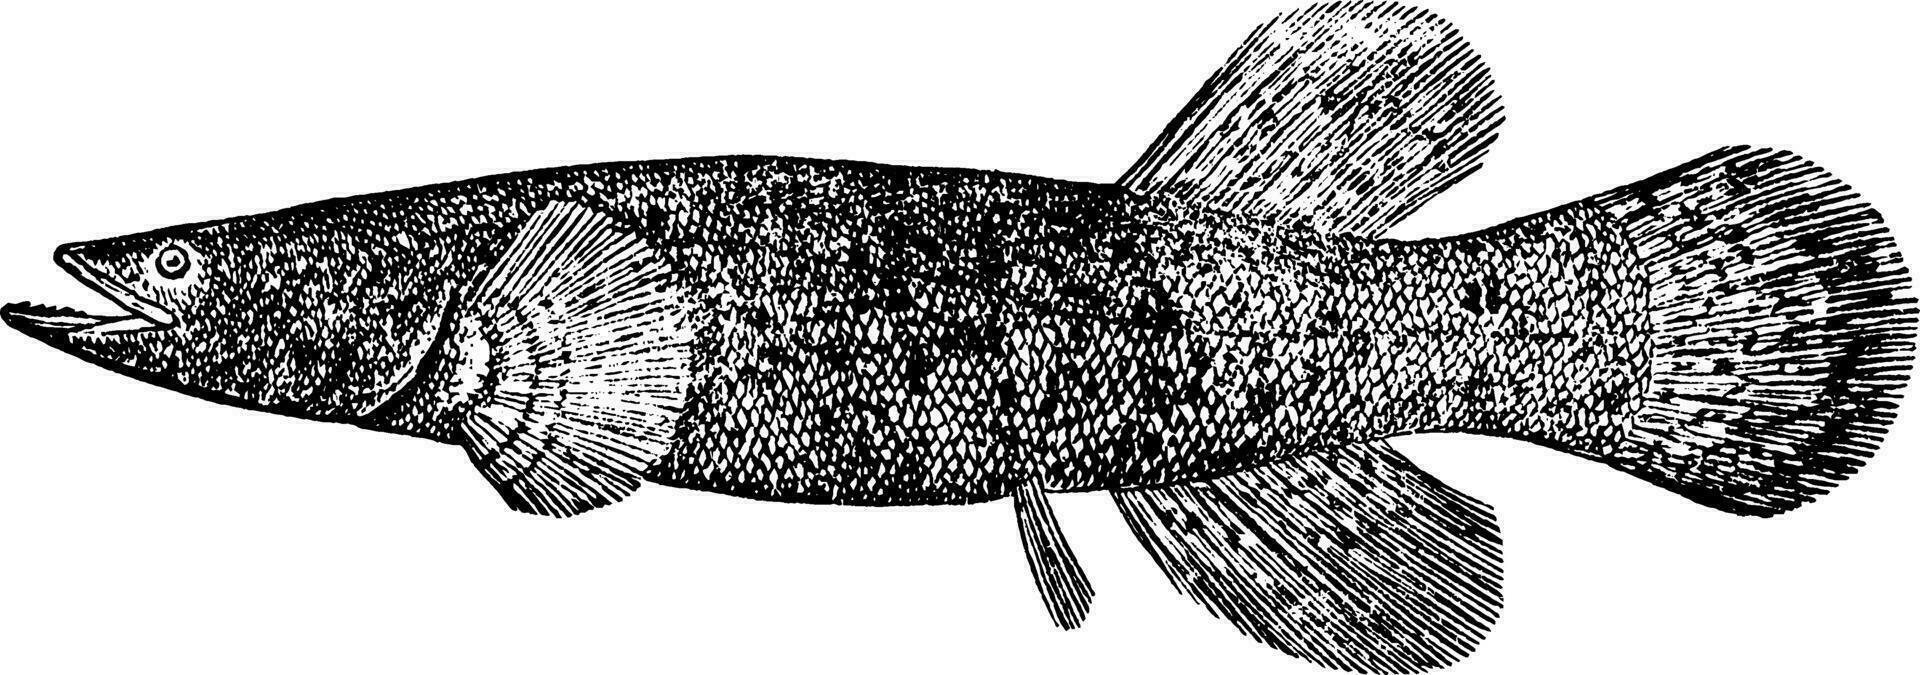 Alaskan Blackfish, vintage illustration. vector